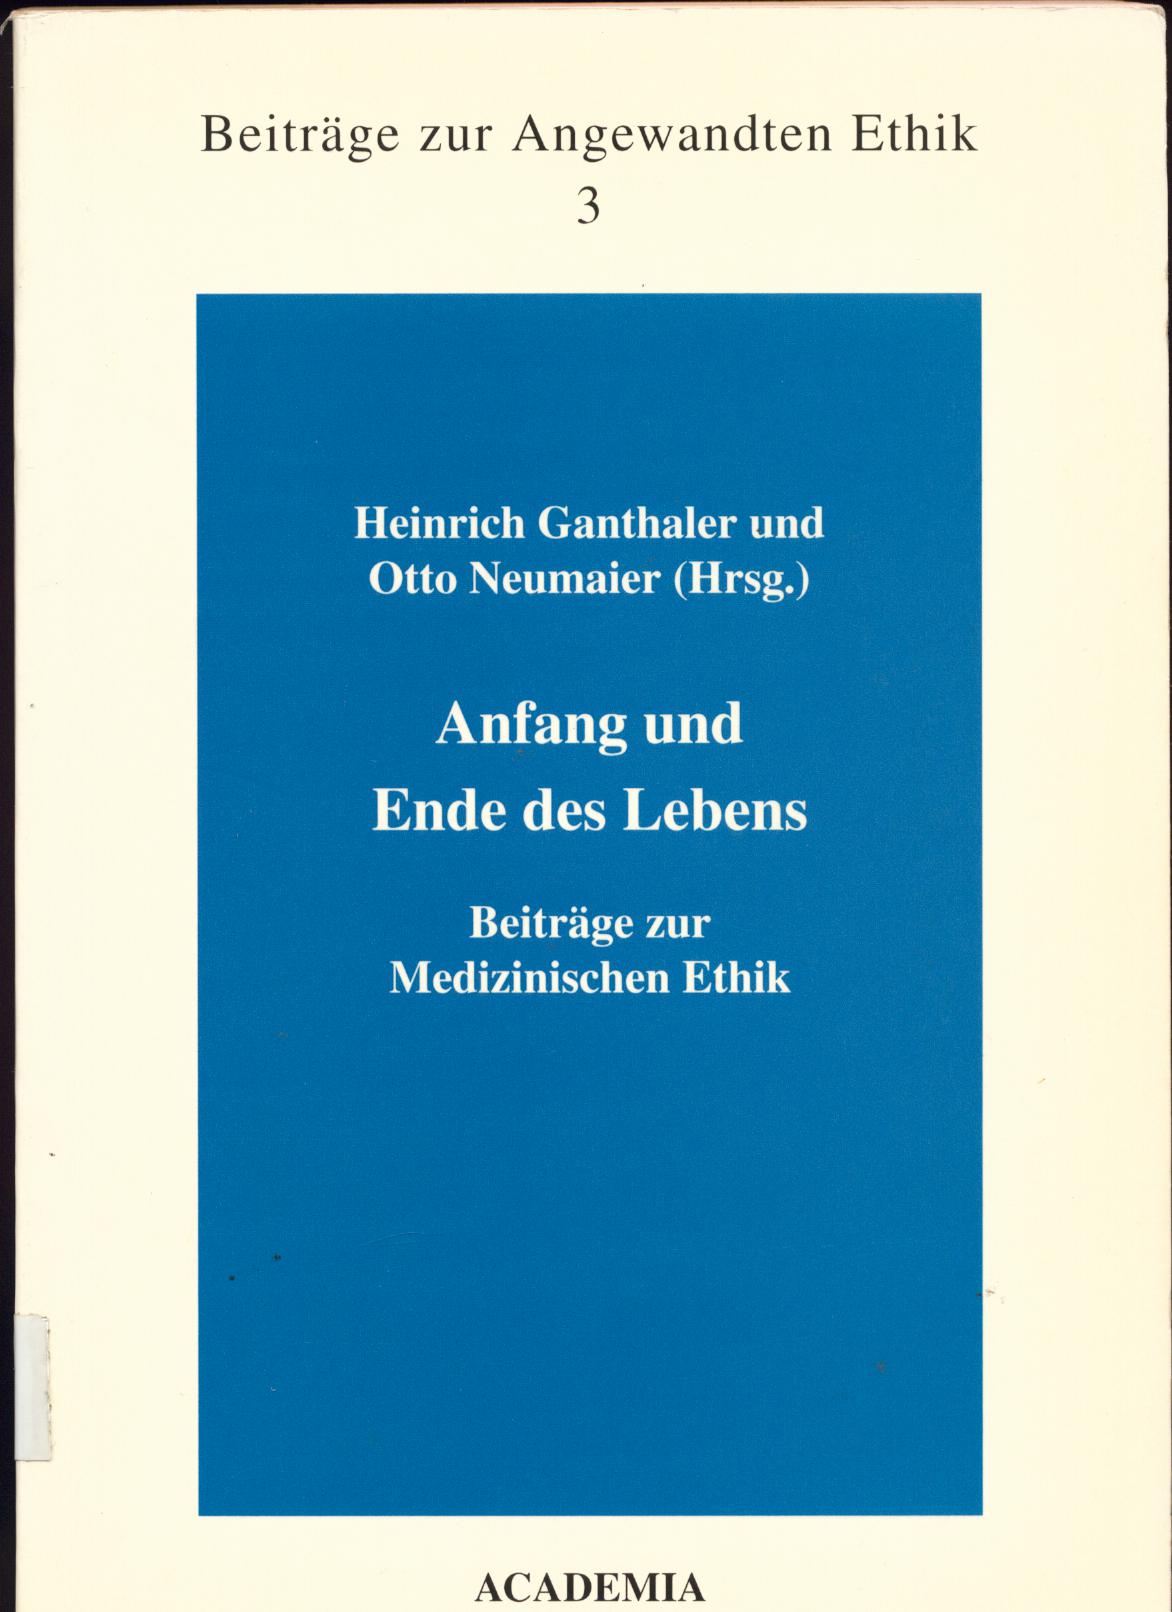 Anfang und Ende des Lebens Beiträge zur Medizinischen Ethik - Ganthaler, Heinrich und Otto Neumaier